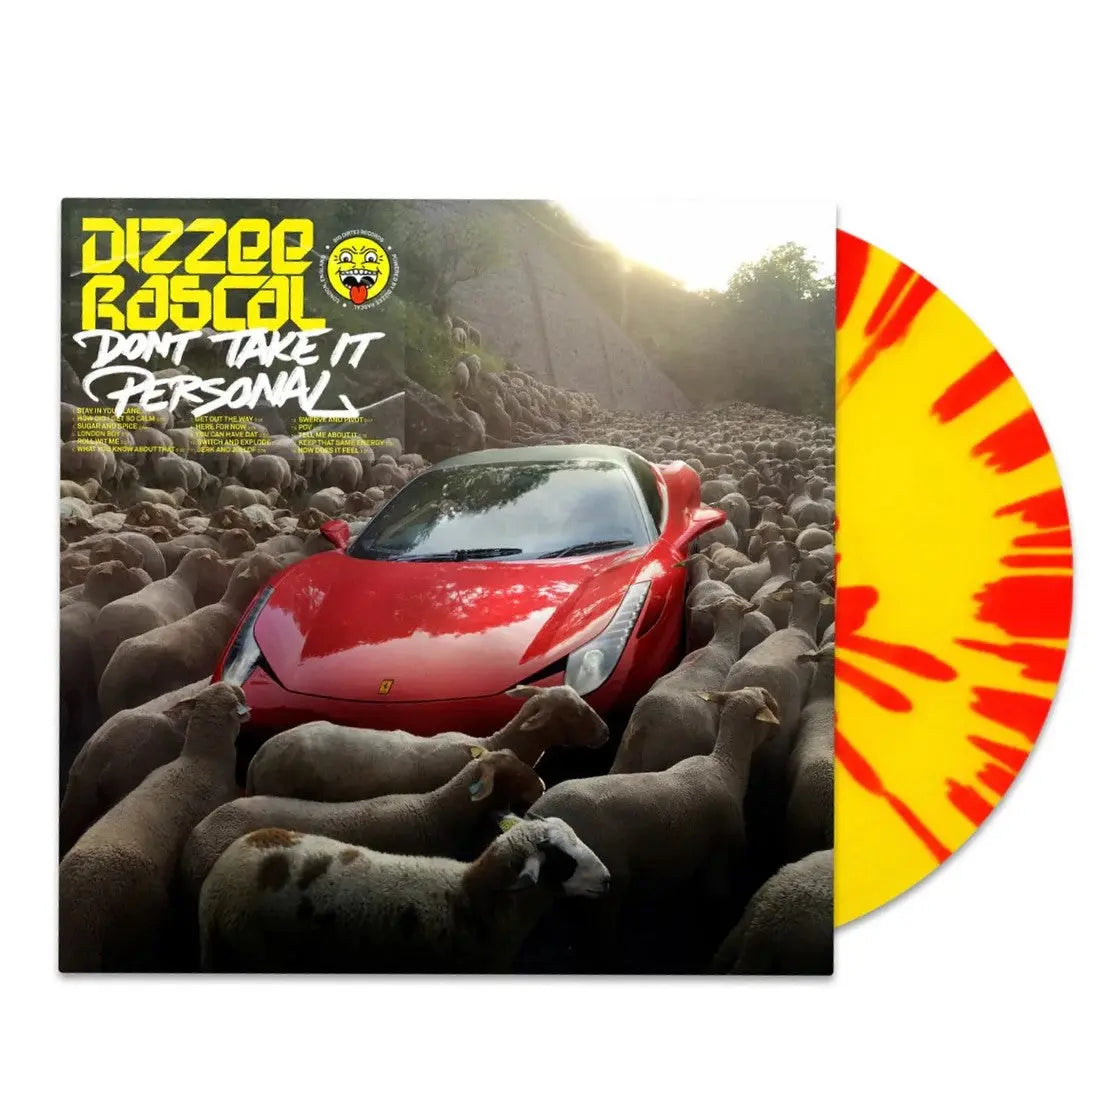 Dizzee Rascal - Don't Take It Personal - Yellow & Red Splatter [Vinyl]